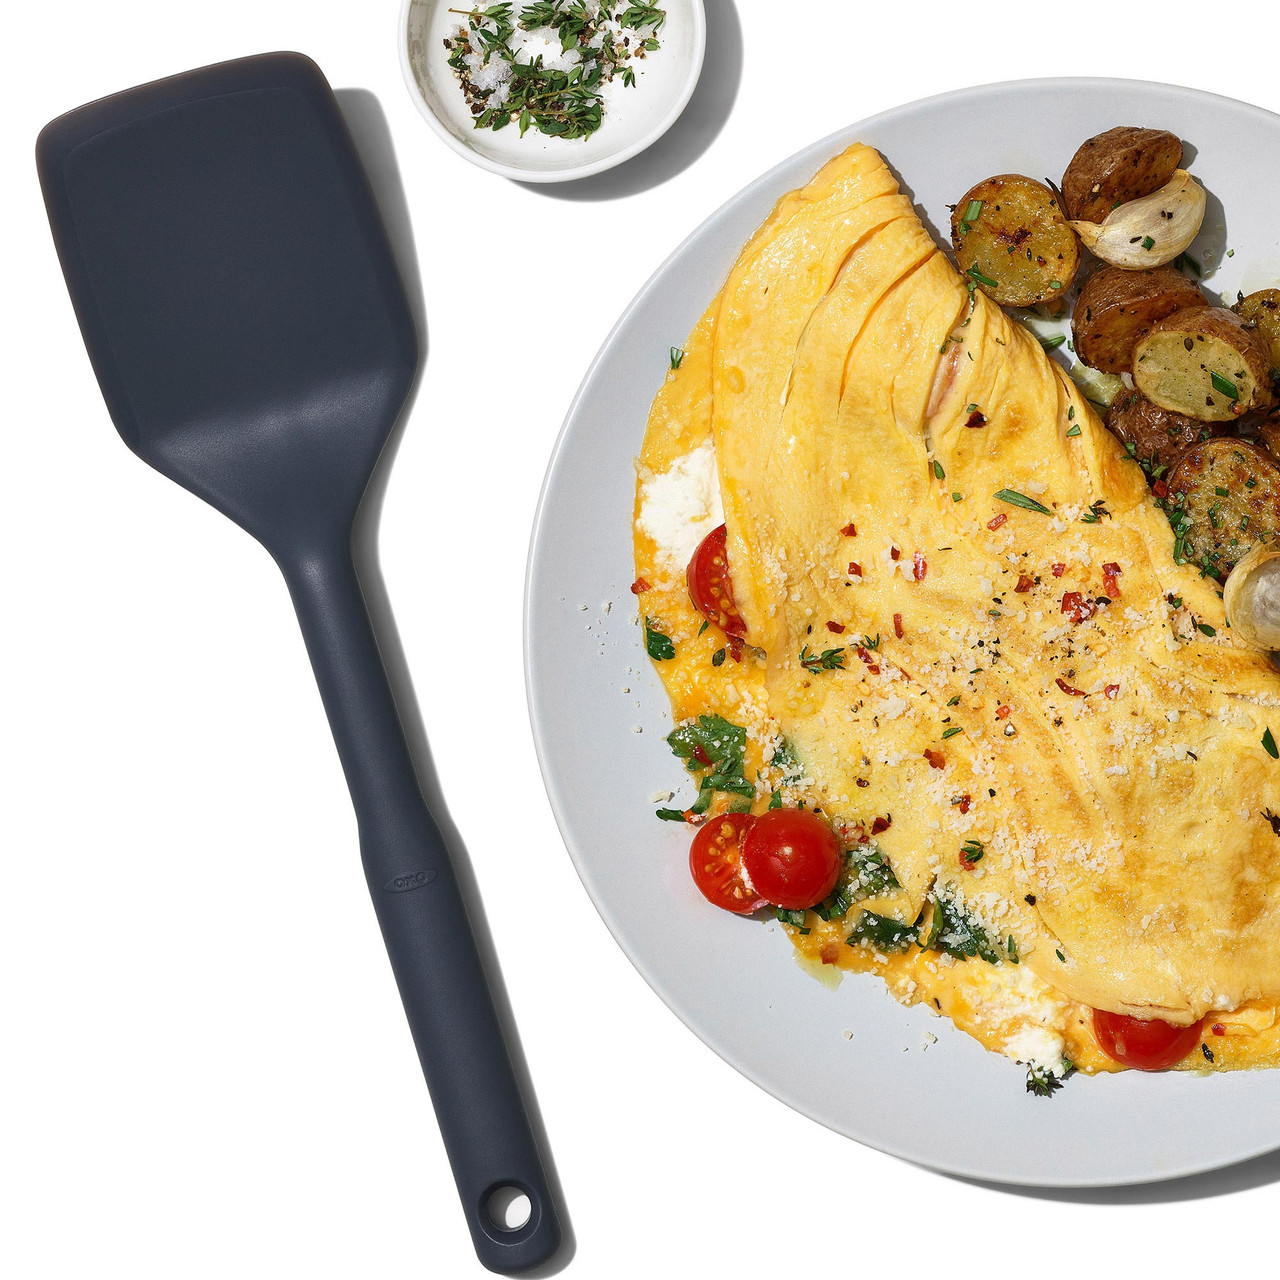 OXO Good Grips Omelet/Omelette Turner Spatula at PHG